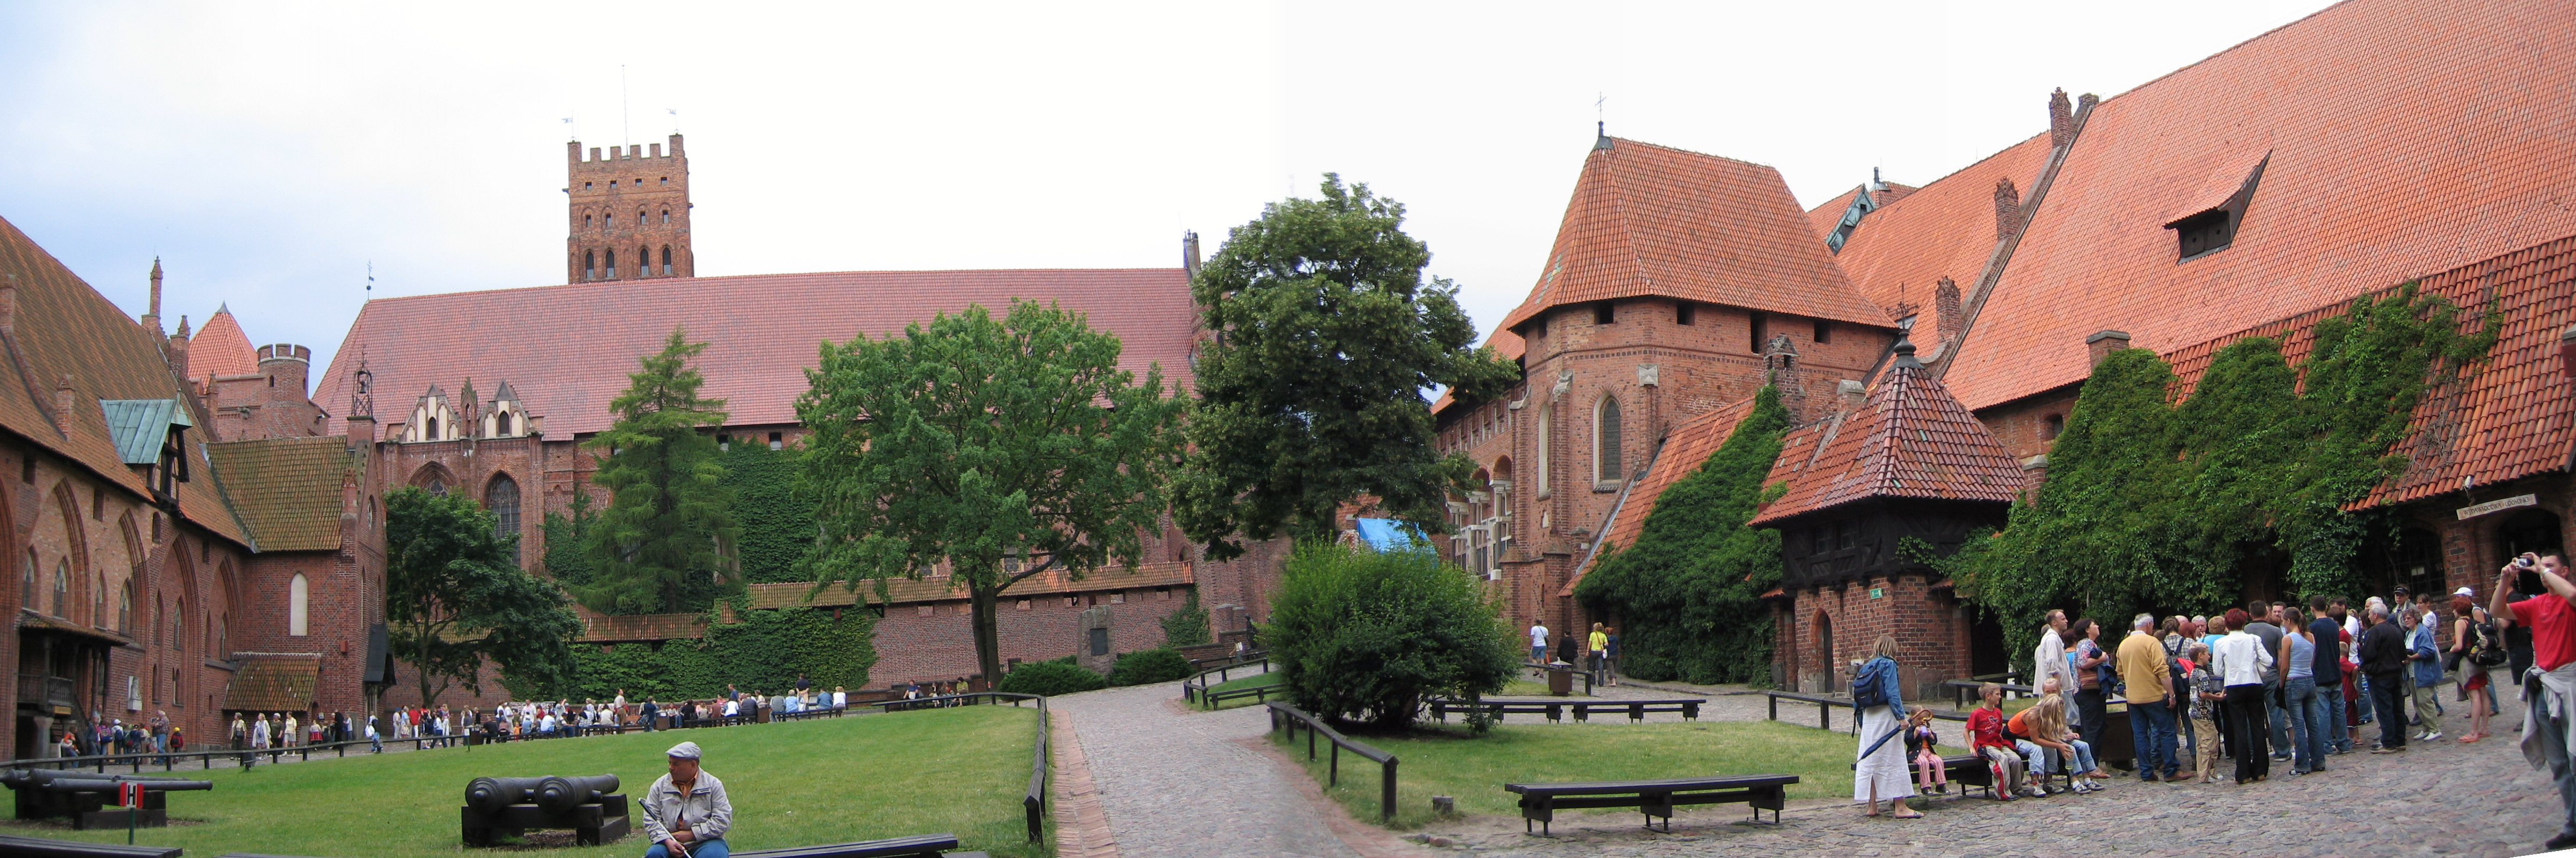 Marienburg aus dem 13. Jh. vom Deutschen Ritterorden